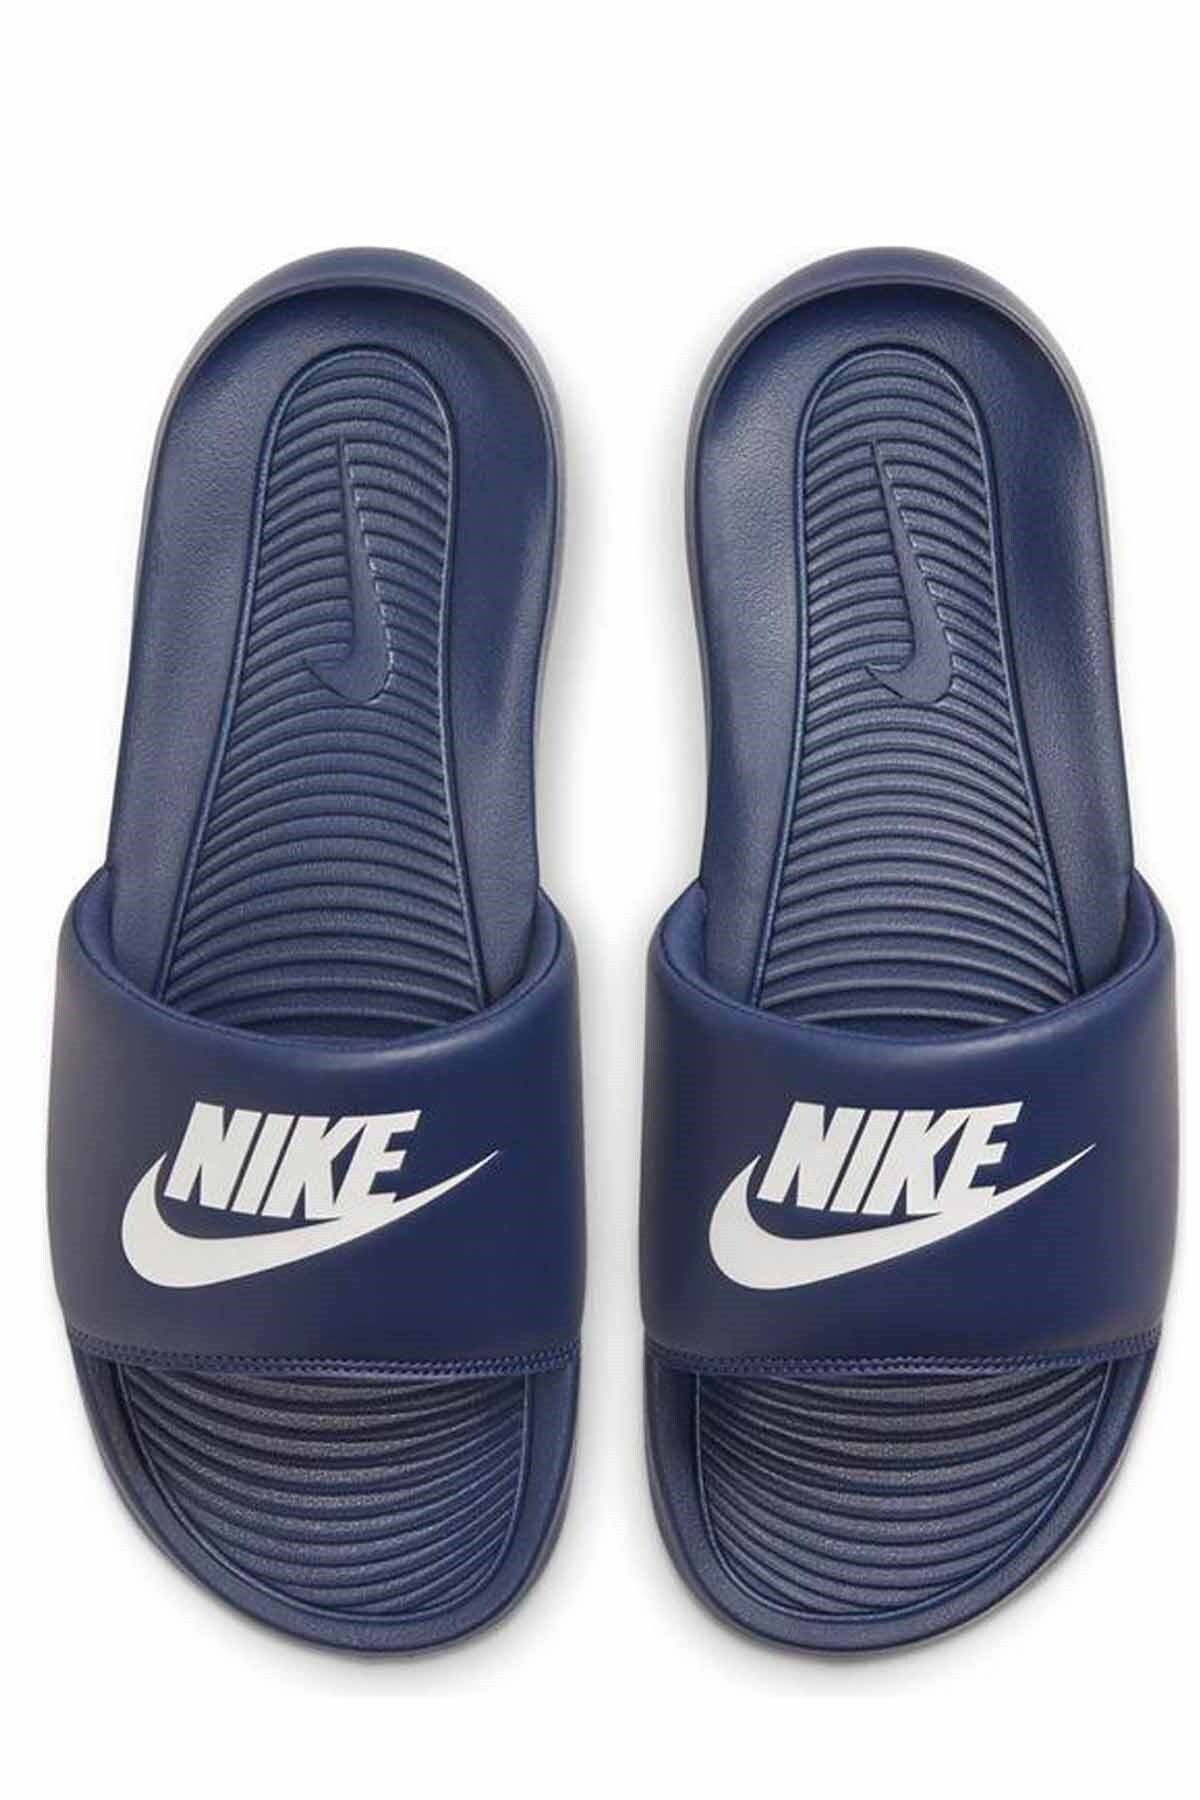 Nike Victori One Erkek Terlik Ayakkabı Cn9675-401-lacıvert